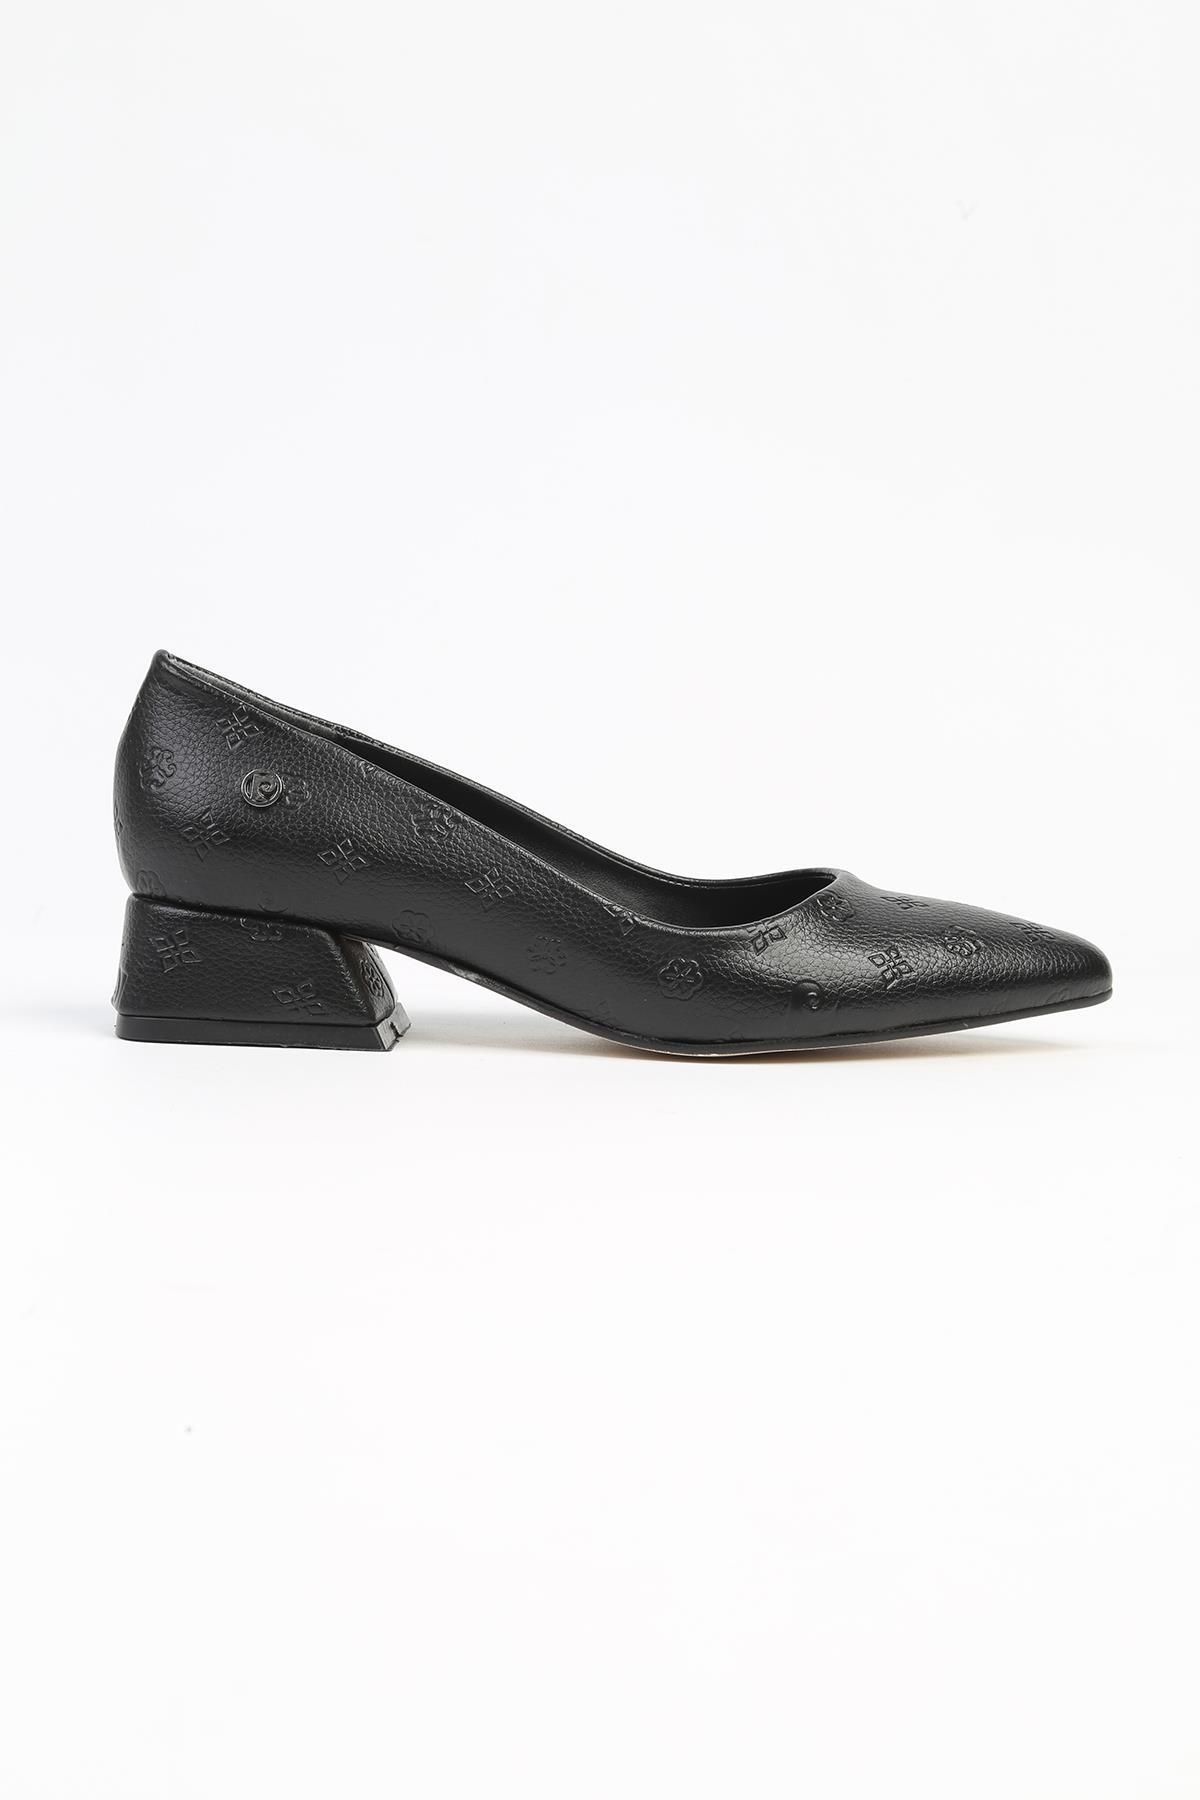 Pierre Cardin ® | PC-52565 - 3478 Siyah Baskılı - Kadın Topuklu Ayakkabı